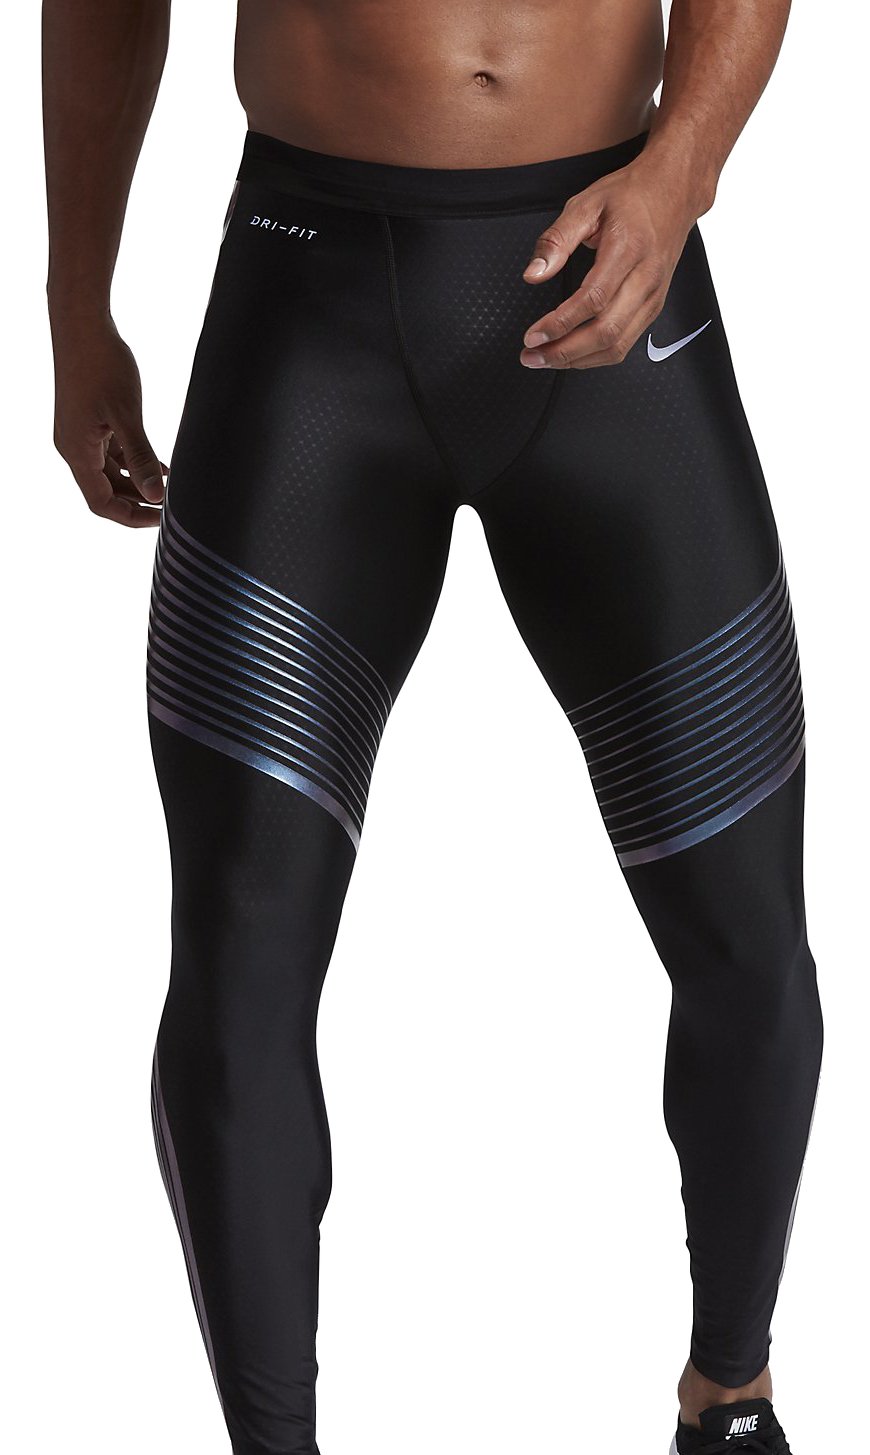 Calça masculina de compressão legging Nike Speed Power 717750 NIKE